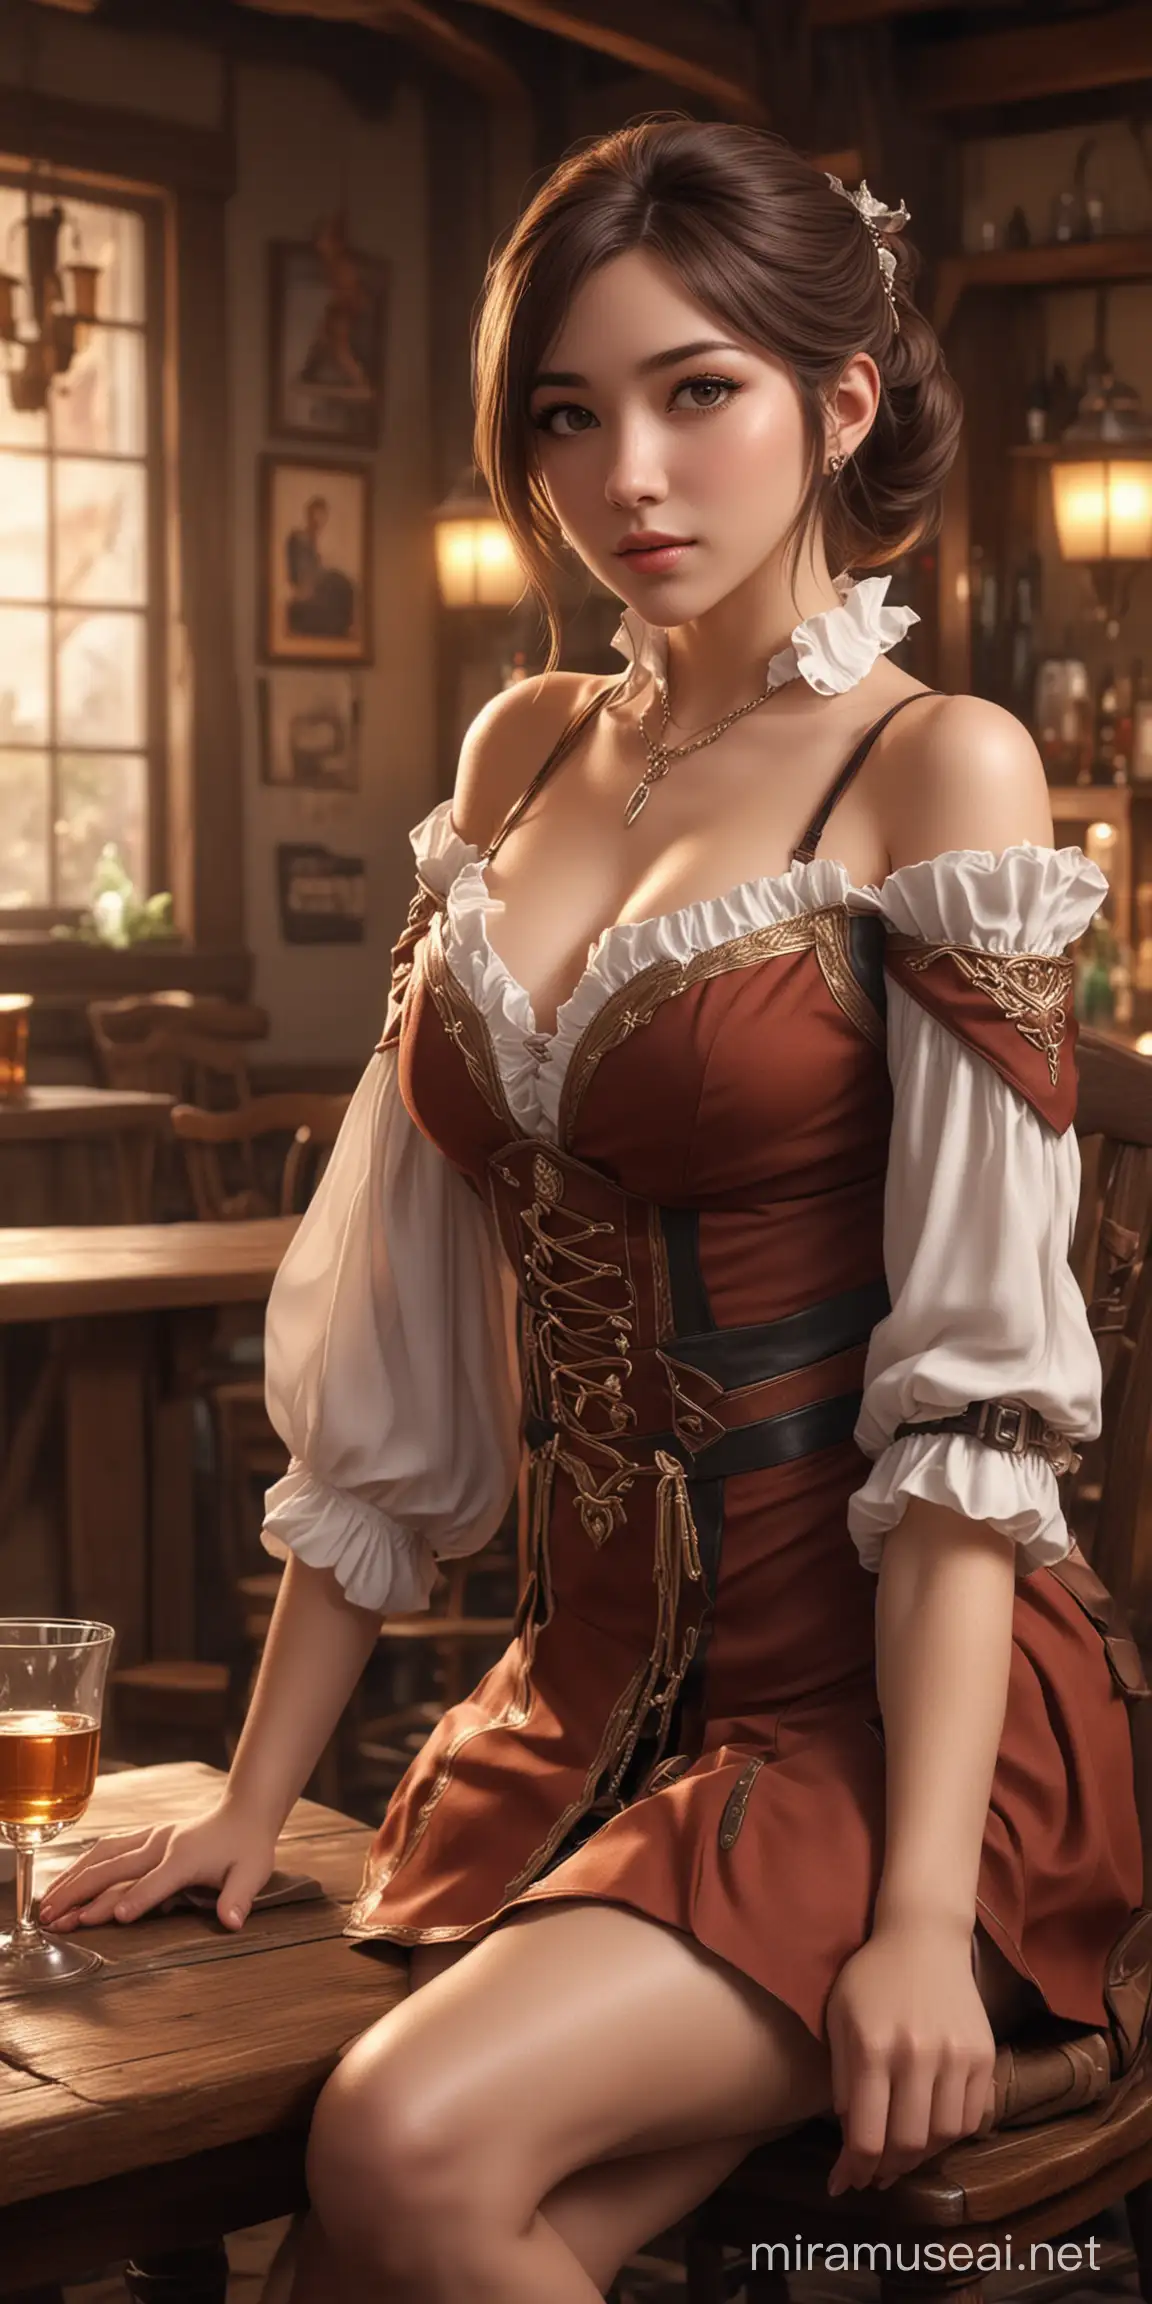 Fantasy Tavern Scene with Elegant Antelope Advisor Girl Cinematic Lighting Digital Art HD